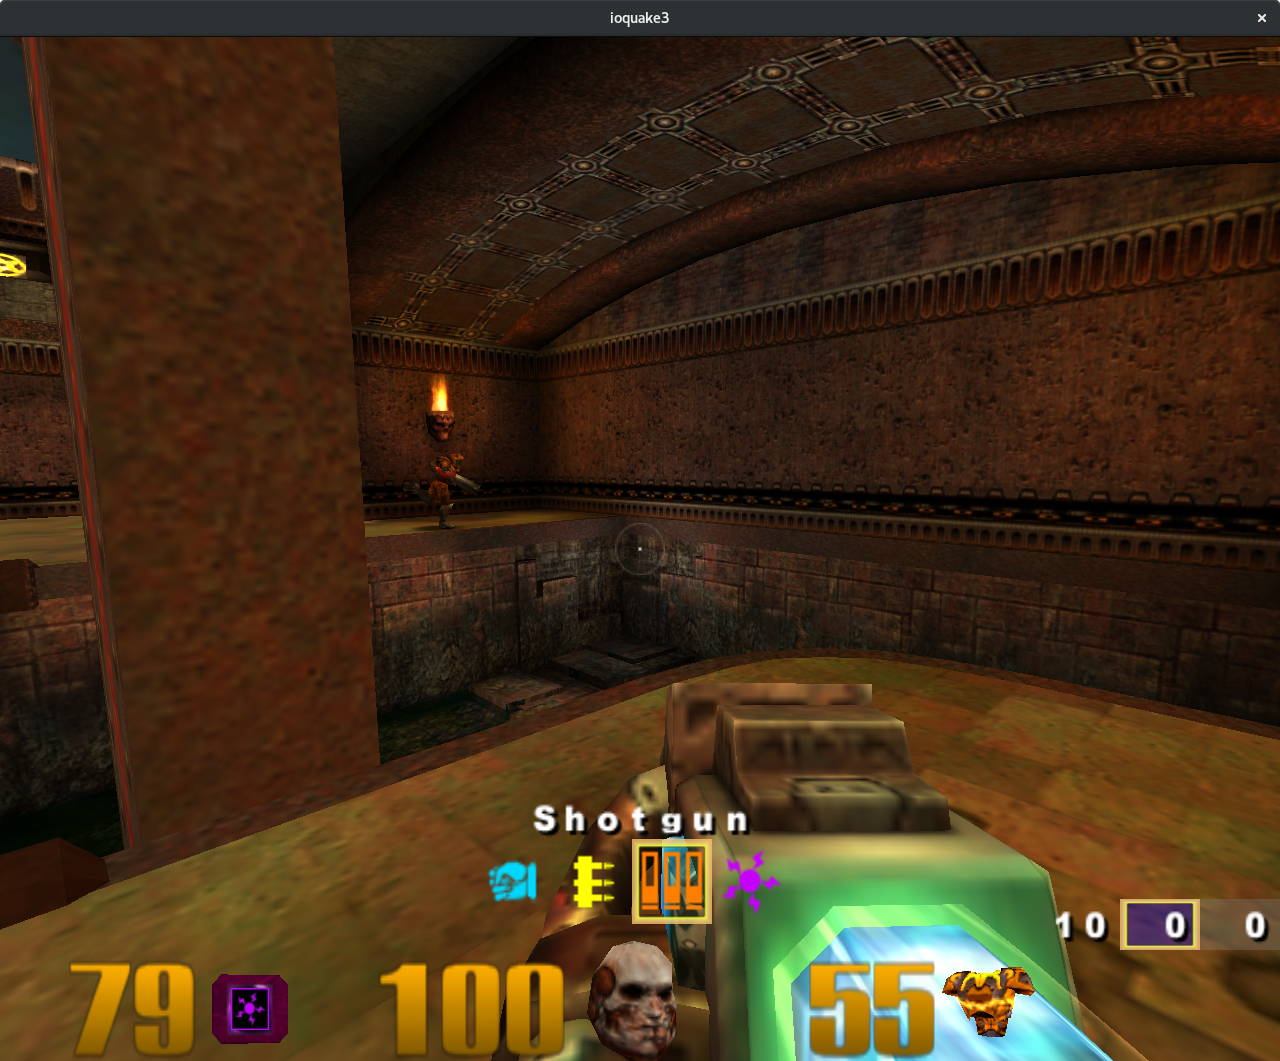 Quake 3 on Zink